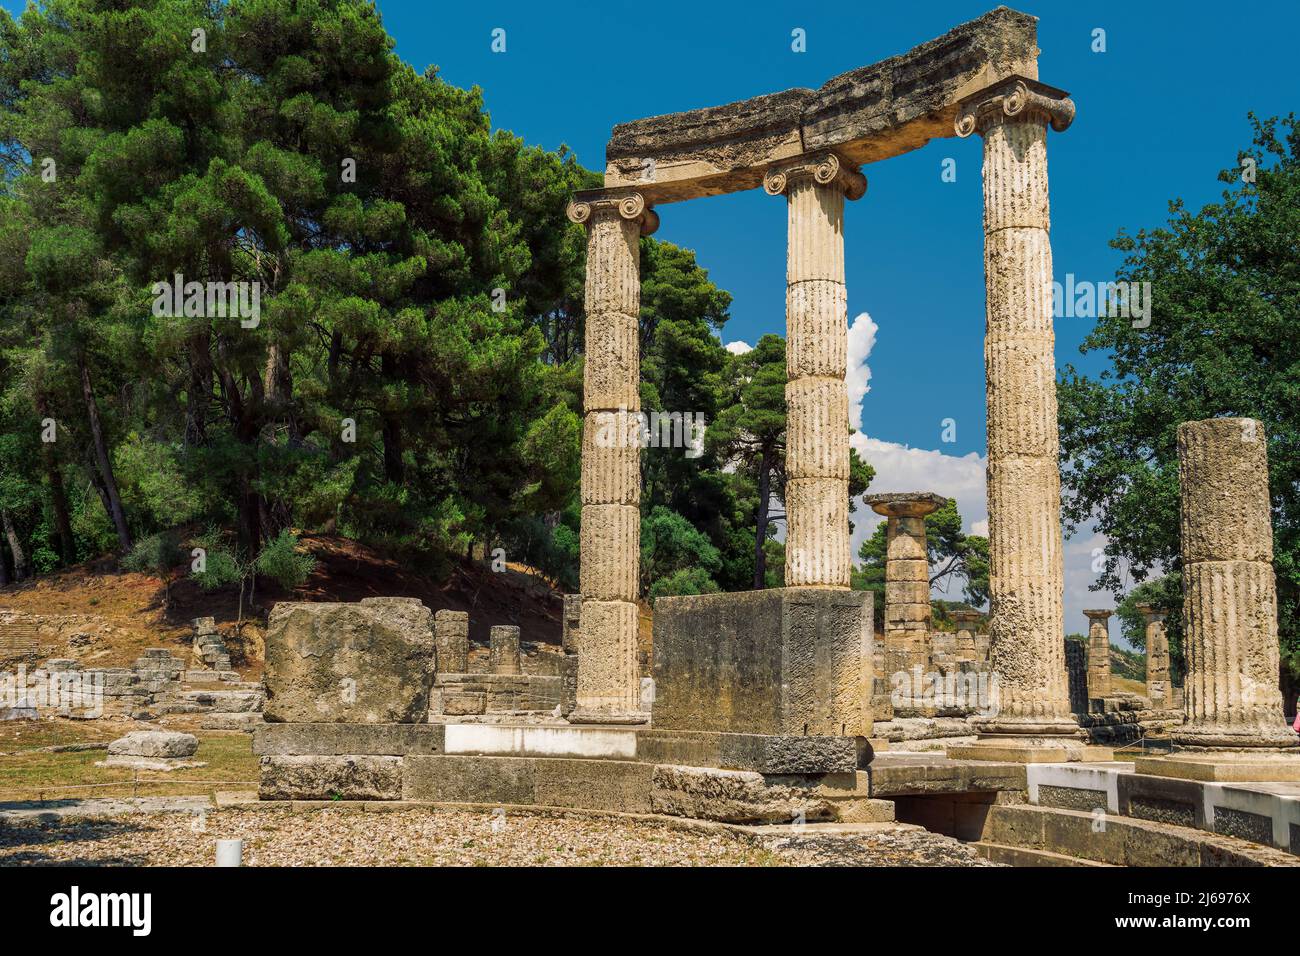 Olympia antica, sito archeologico con colonne circolari commemorative Philippeion, patrimonio mondiale dell'UNESCO, Olympia, Grecia, Europa Foto Stock